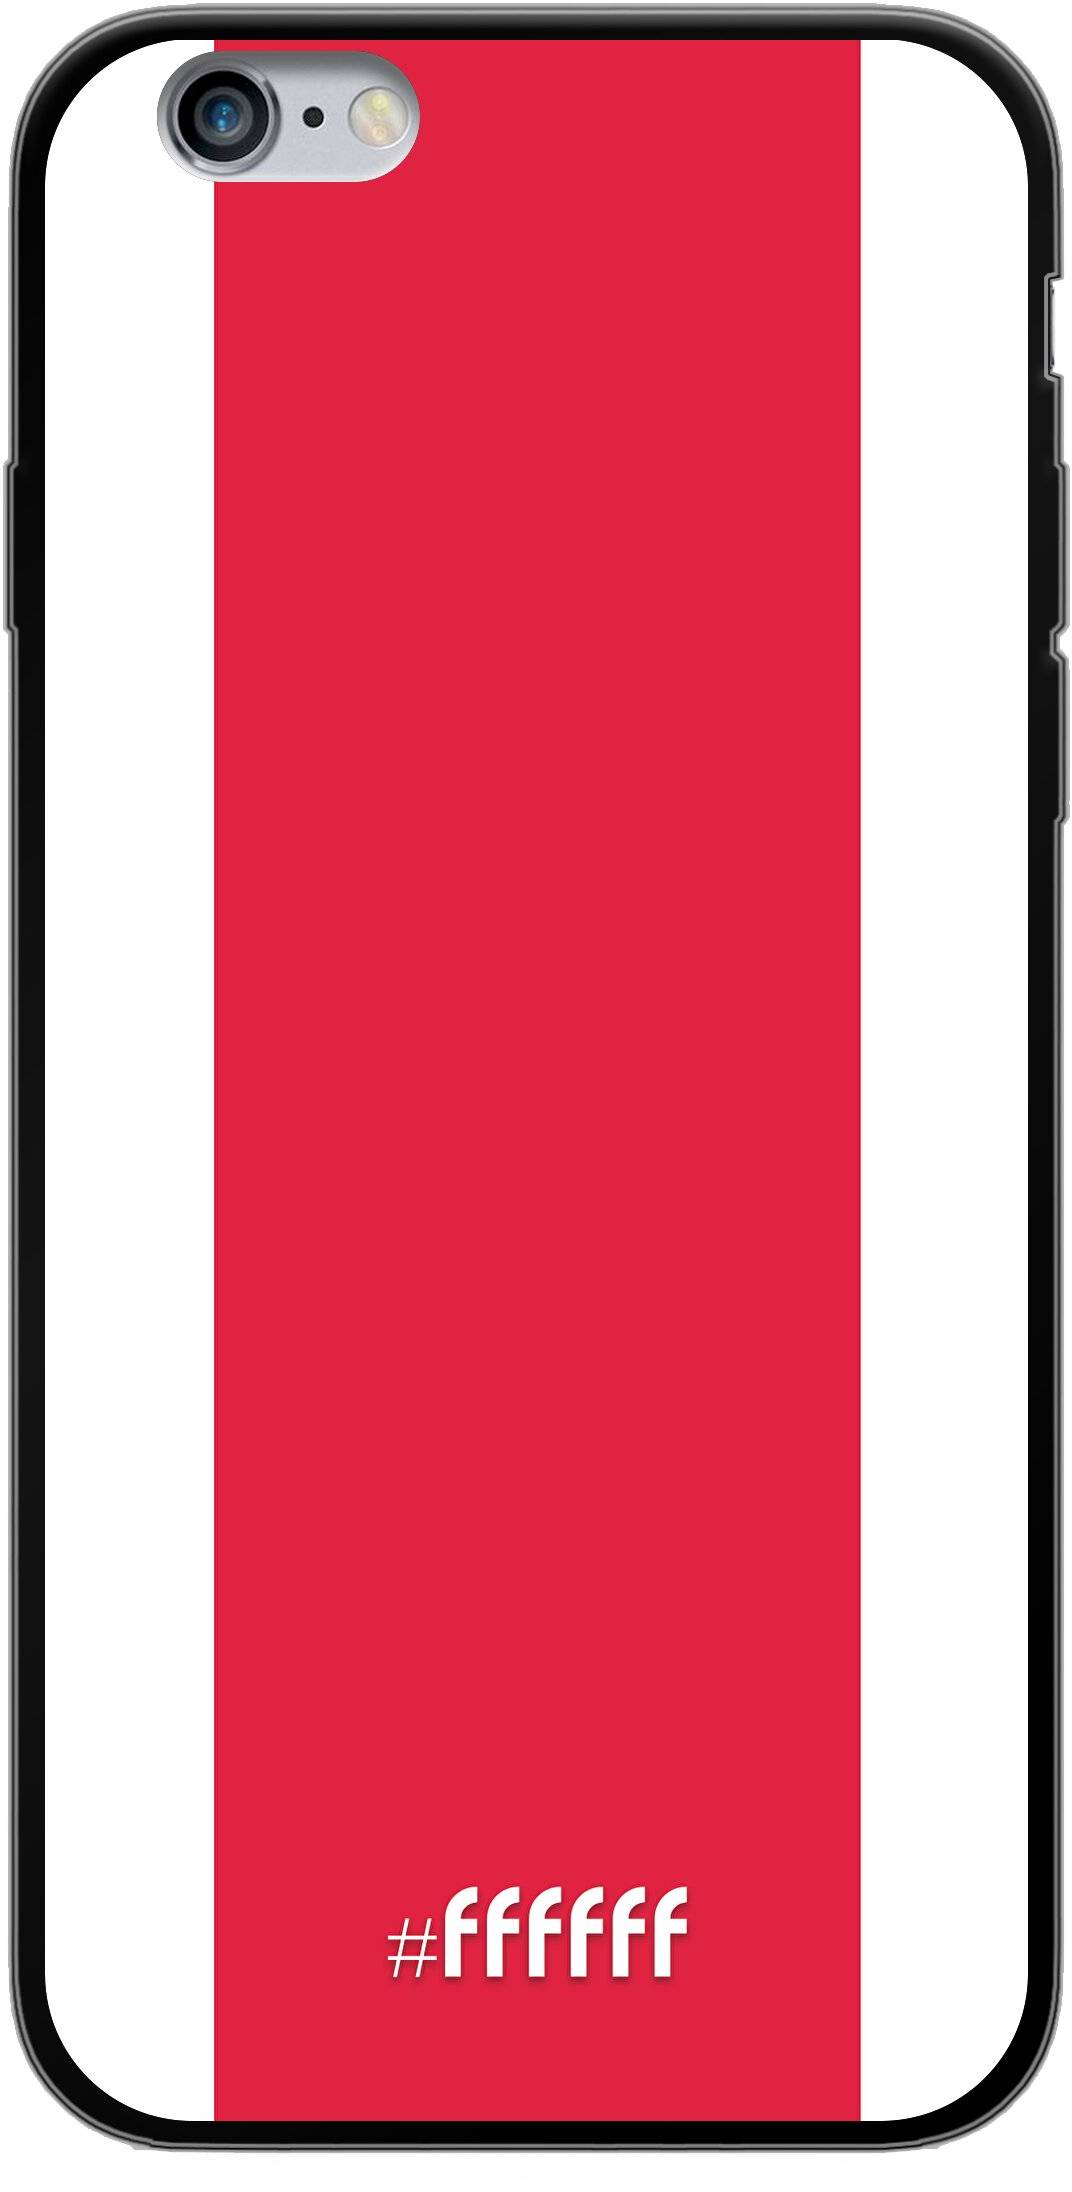 AFC Ajax iPhone 6